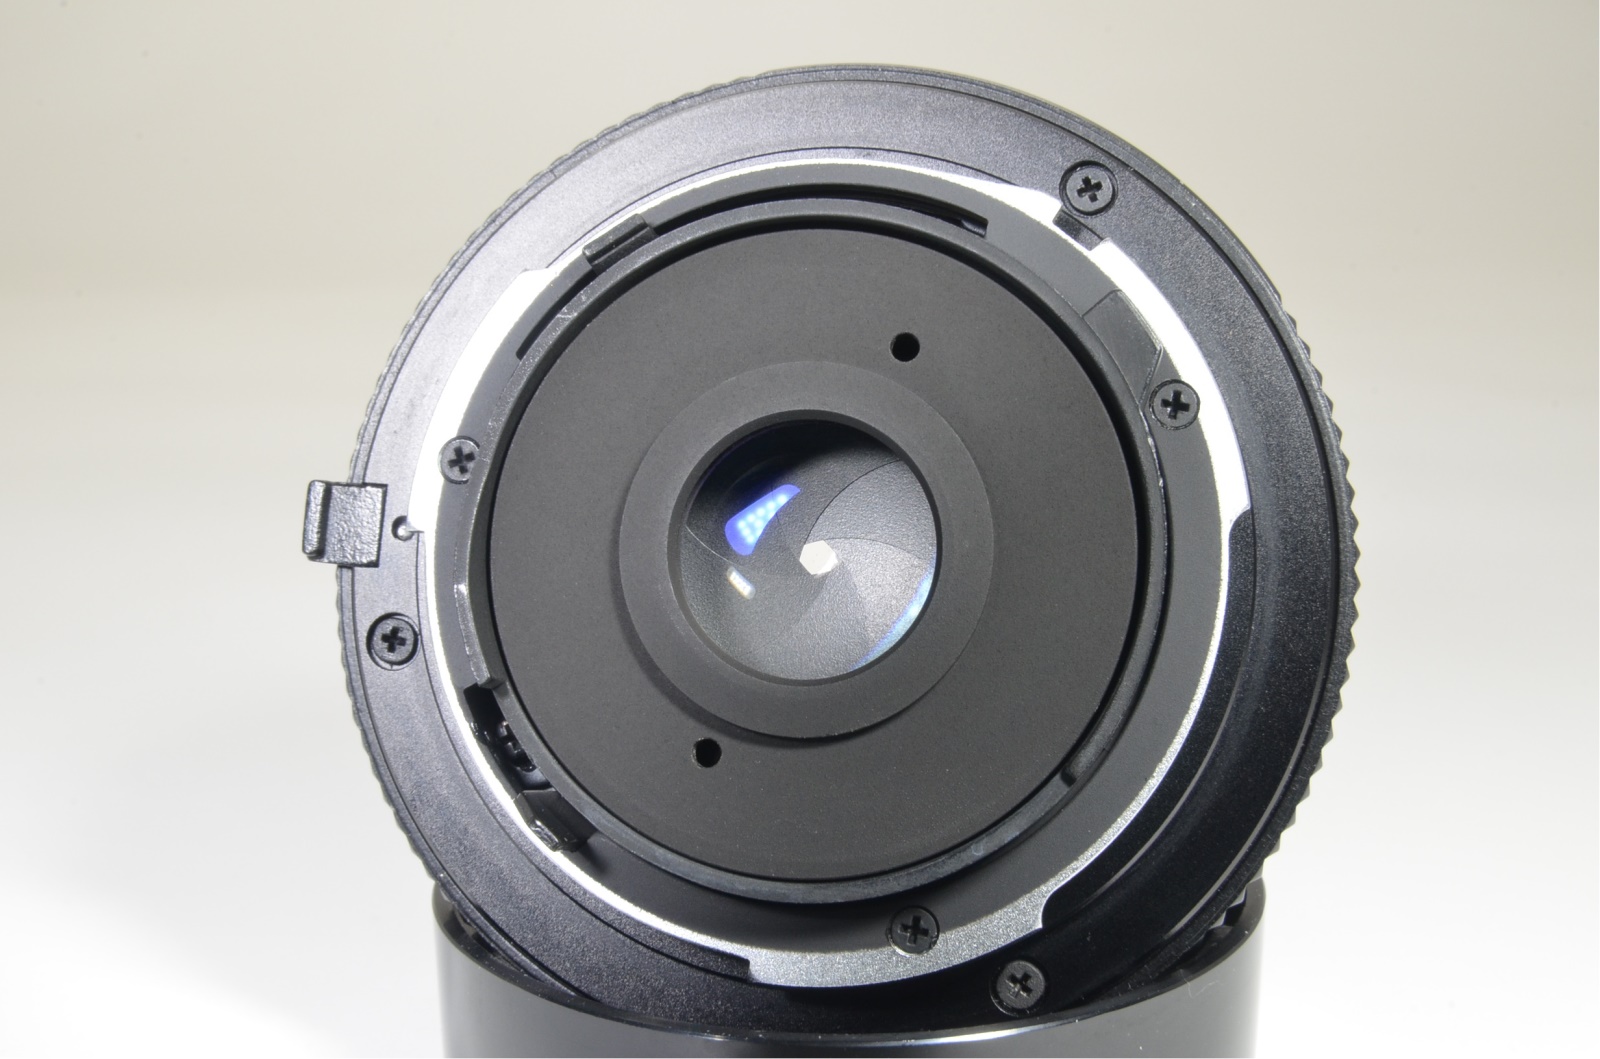 contax aria data back, tessar 45mm f2.8, vario-sonnar 28-70mm mmj film tested